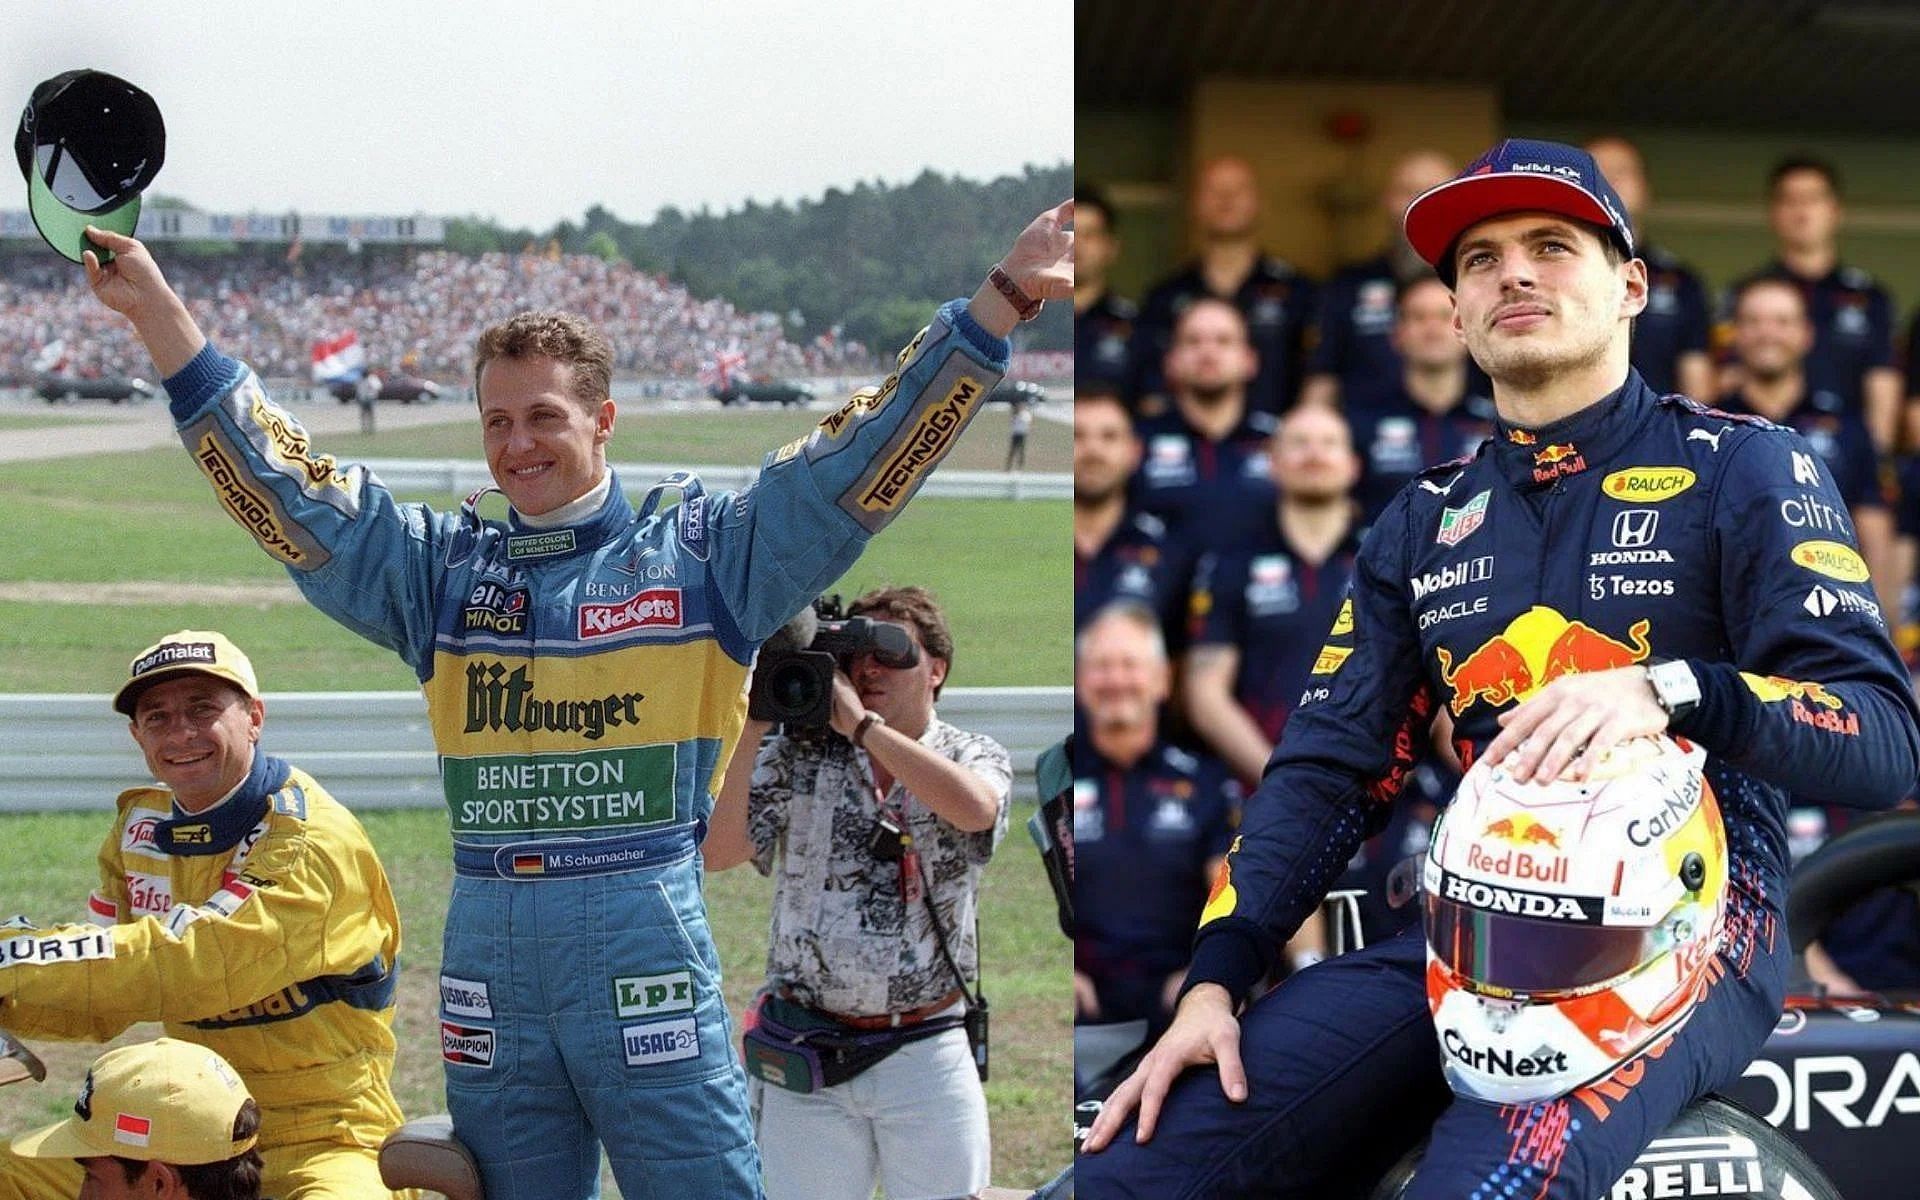 Michael Schumacher and Max Verstappen share quite a few similarities